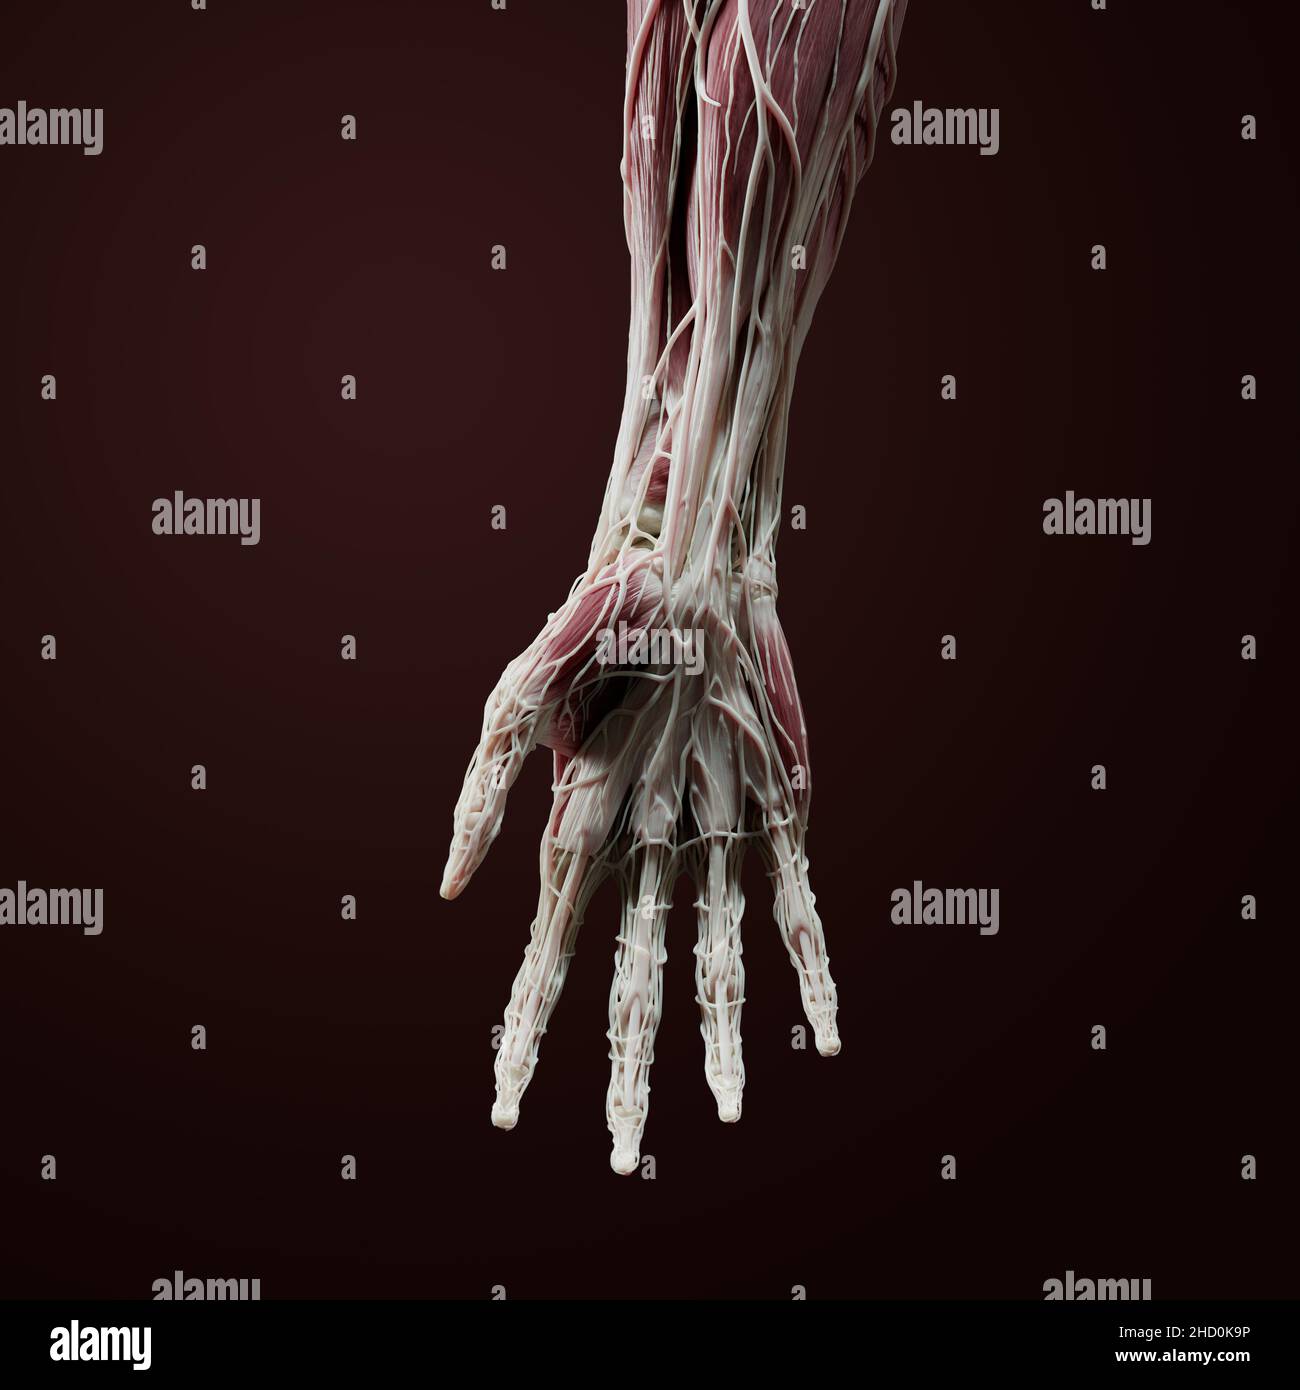 3D anatomie complète du côté palmaire de la main, du poignet et de l'avant-bras distal, y compris les muscles, les vaisseaux, le nerf, l'os, les ligaments,et tendons sur le dos rouge Banque D'Images